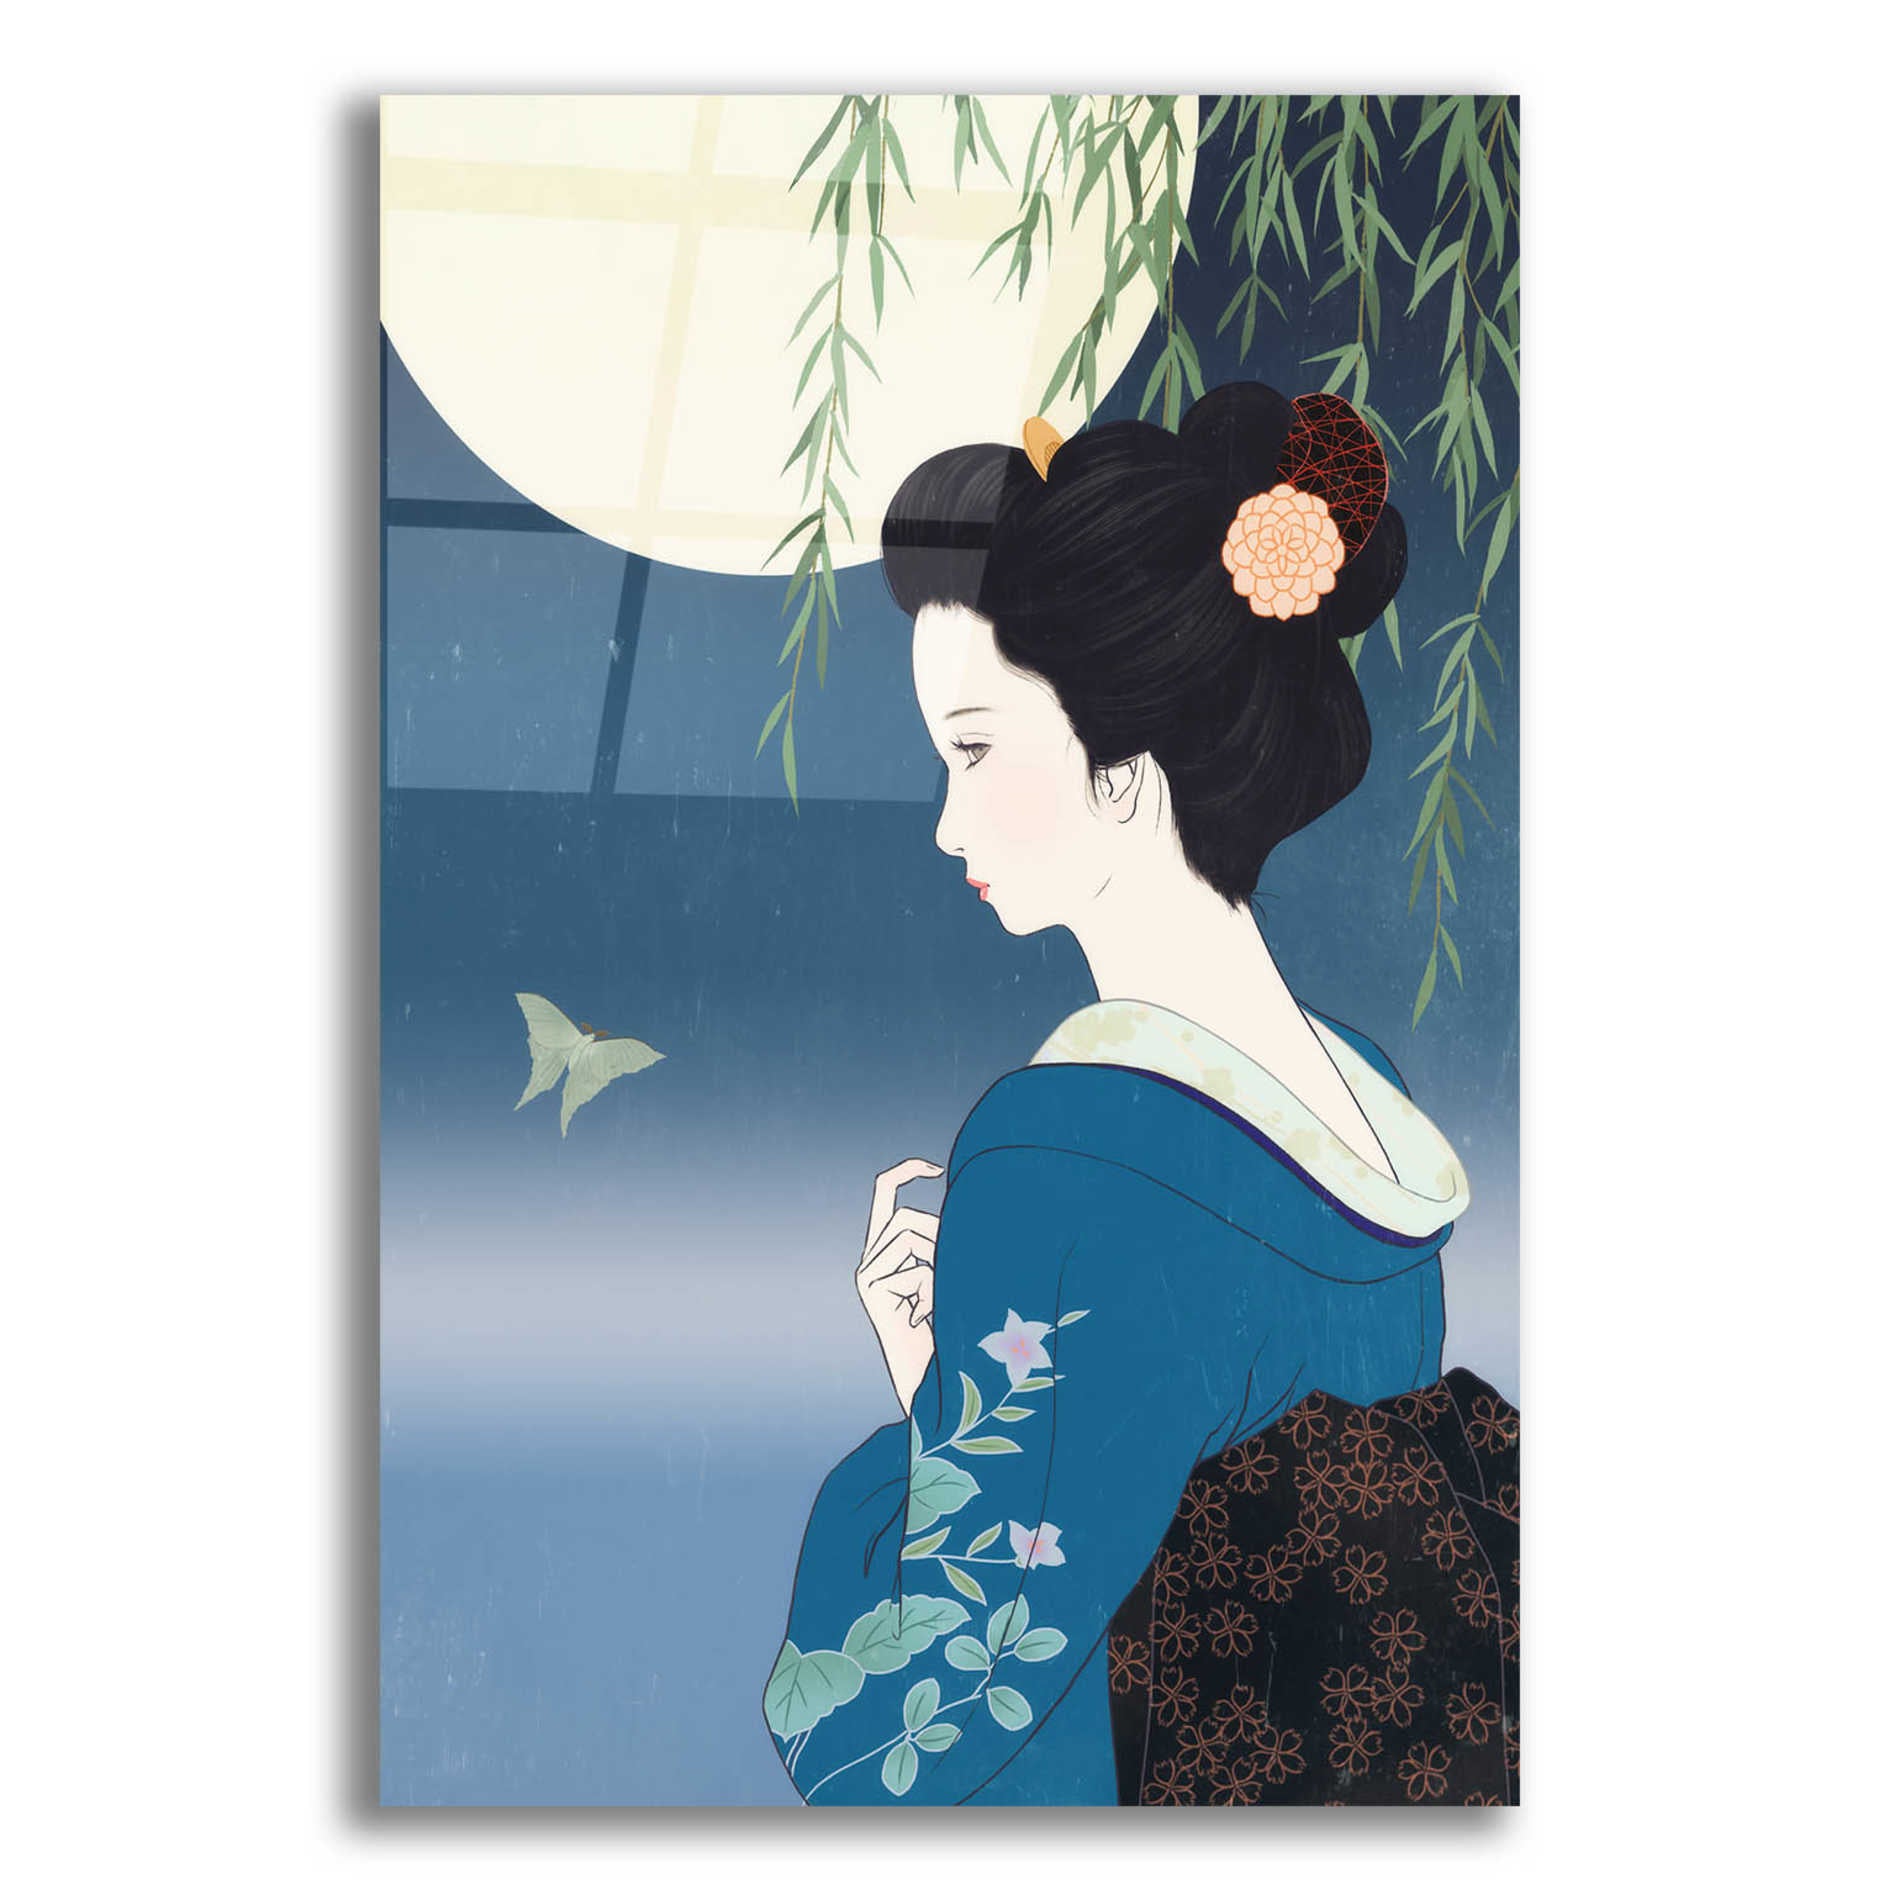 Epic Art 'Fumitsuki' by Sai Tamiya, Acrylic Glass Wall Art,16x24